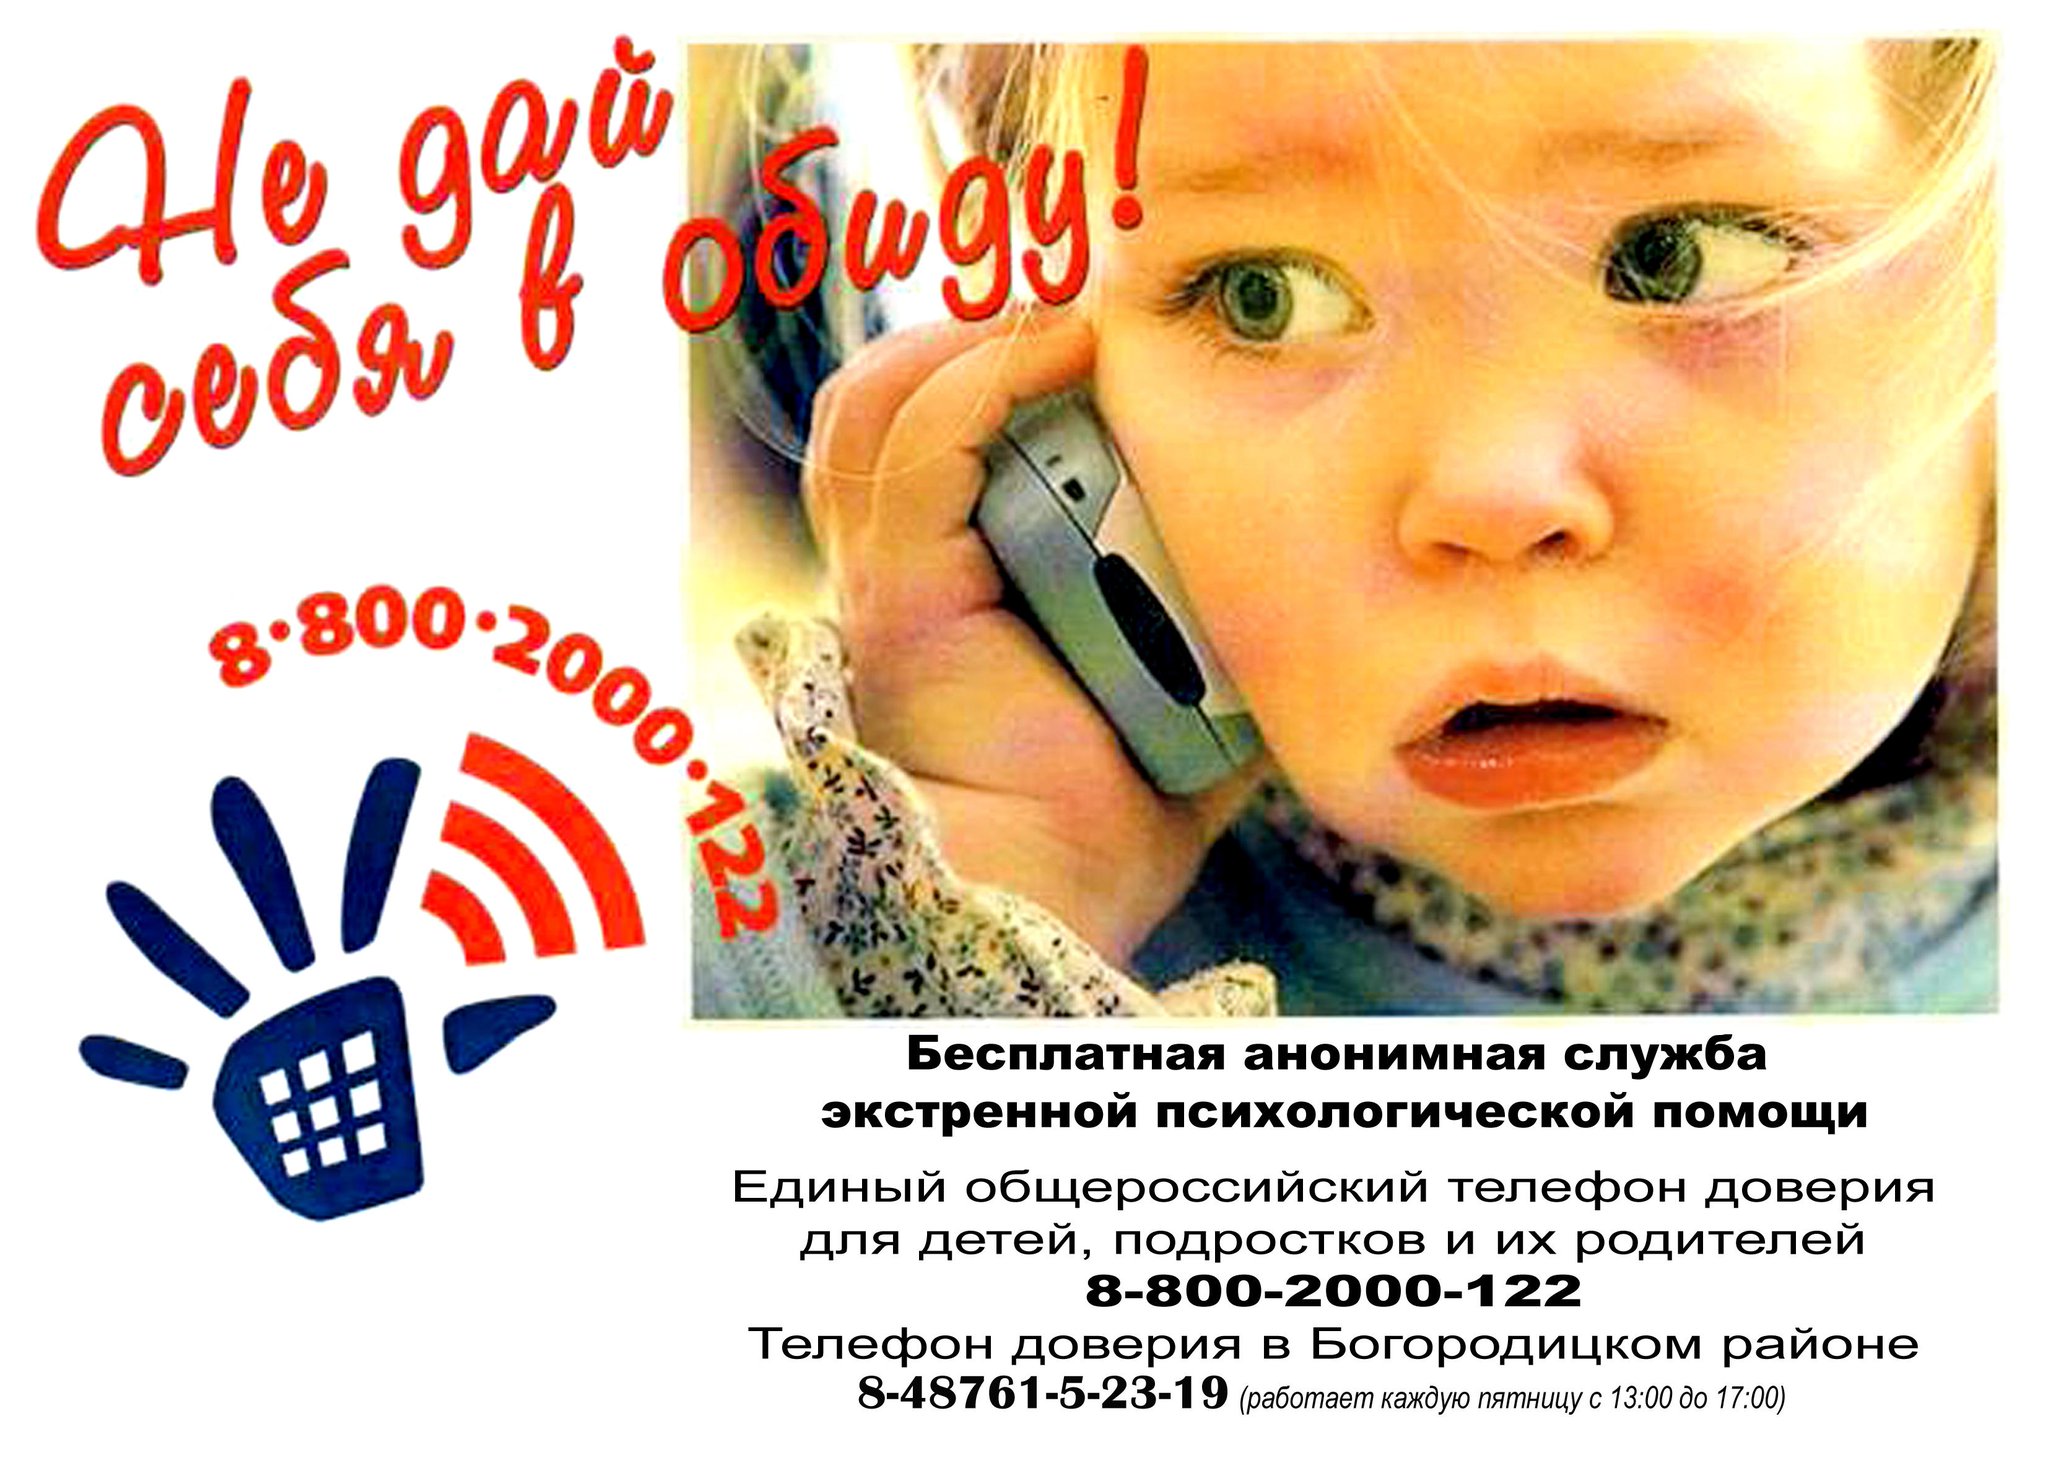 Помощь доверия детям. Единый детский телефон доверия 8-800-2000-122. Телефон доверия. Телефон доверия для детей. Детские телефоны доверия.